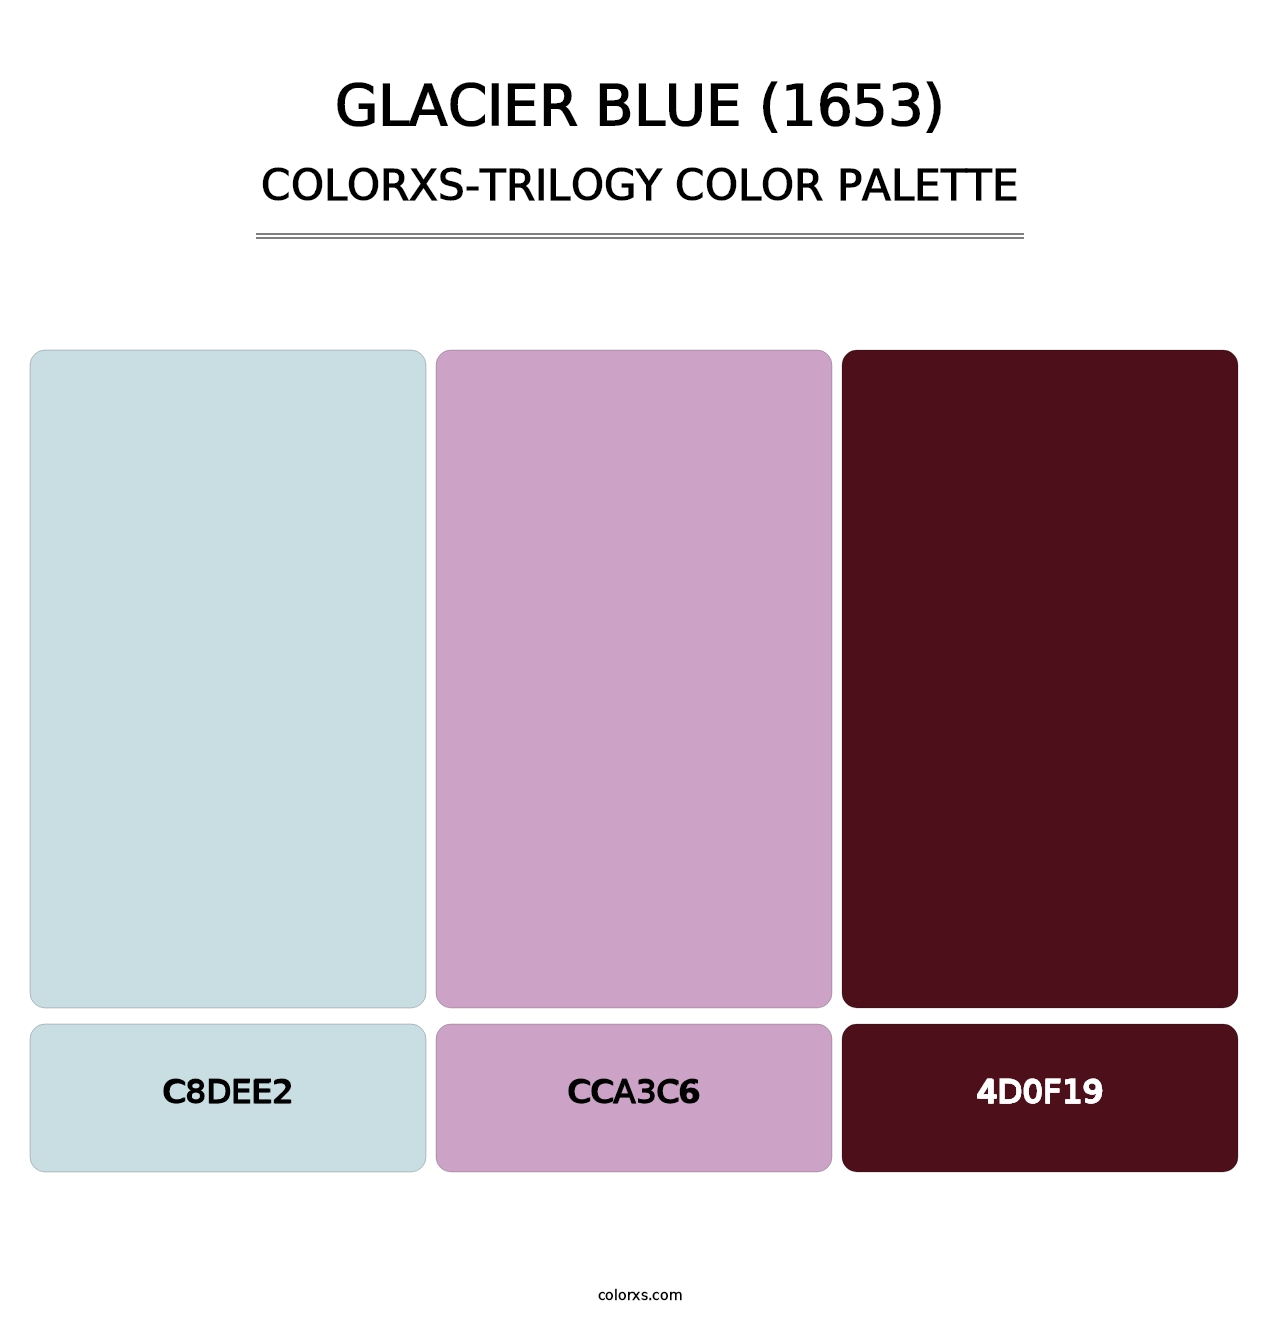 Glacier Blue (1653) - Colorxs Trilogy Palette